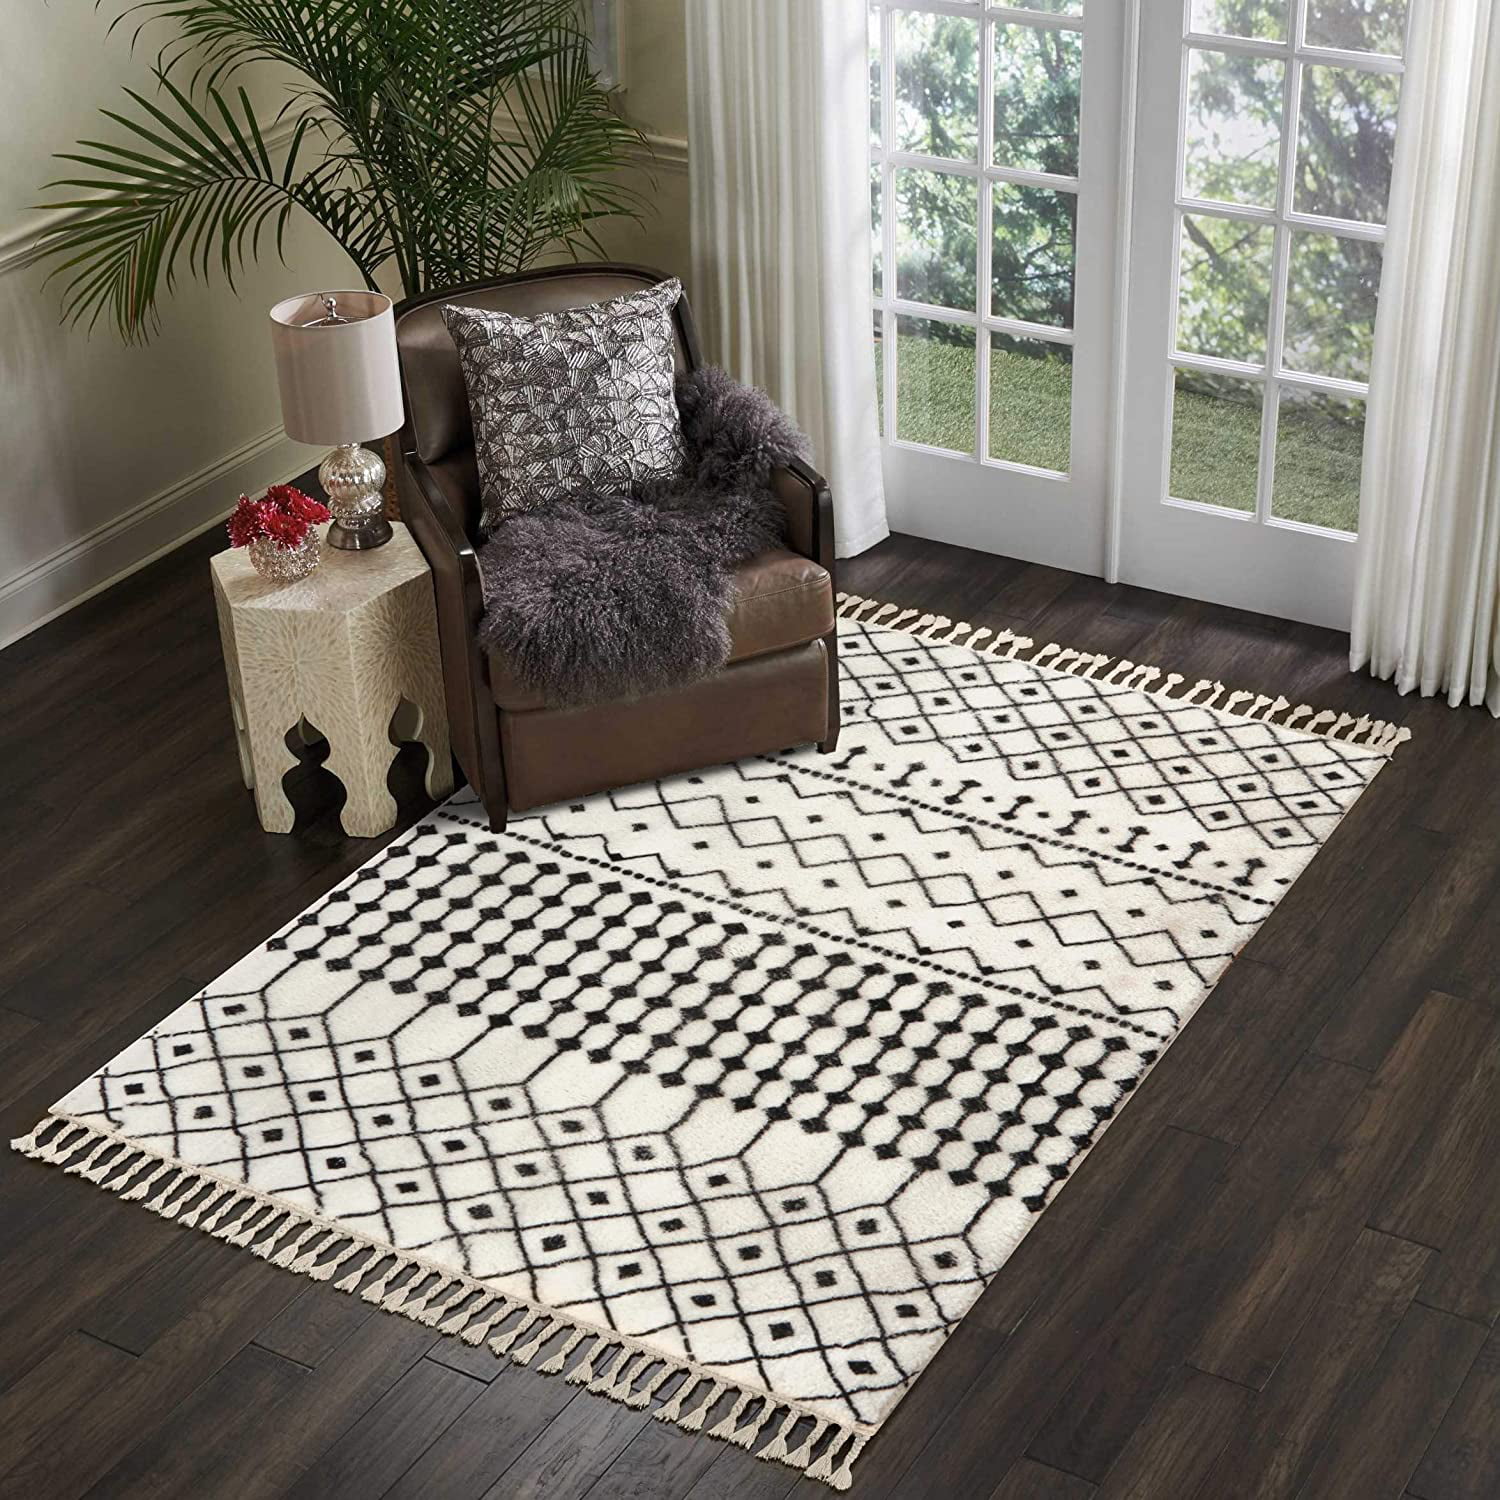 Grey Area Rug Mosaic Geometric Pattern Rugs Bedroom Living Room Carpet Floor Mat 